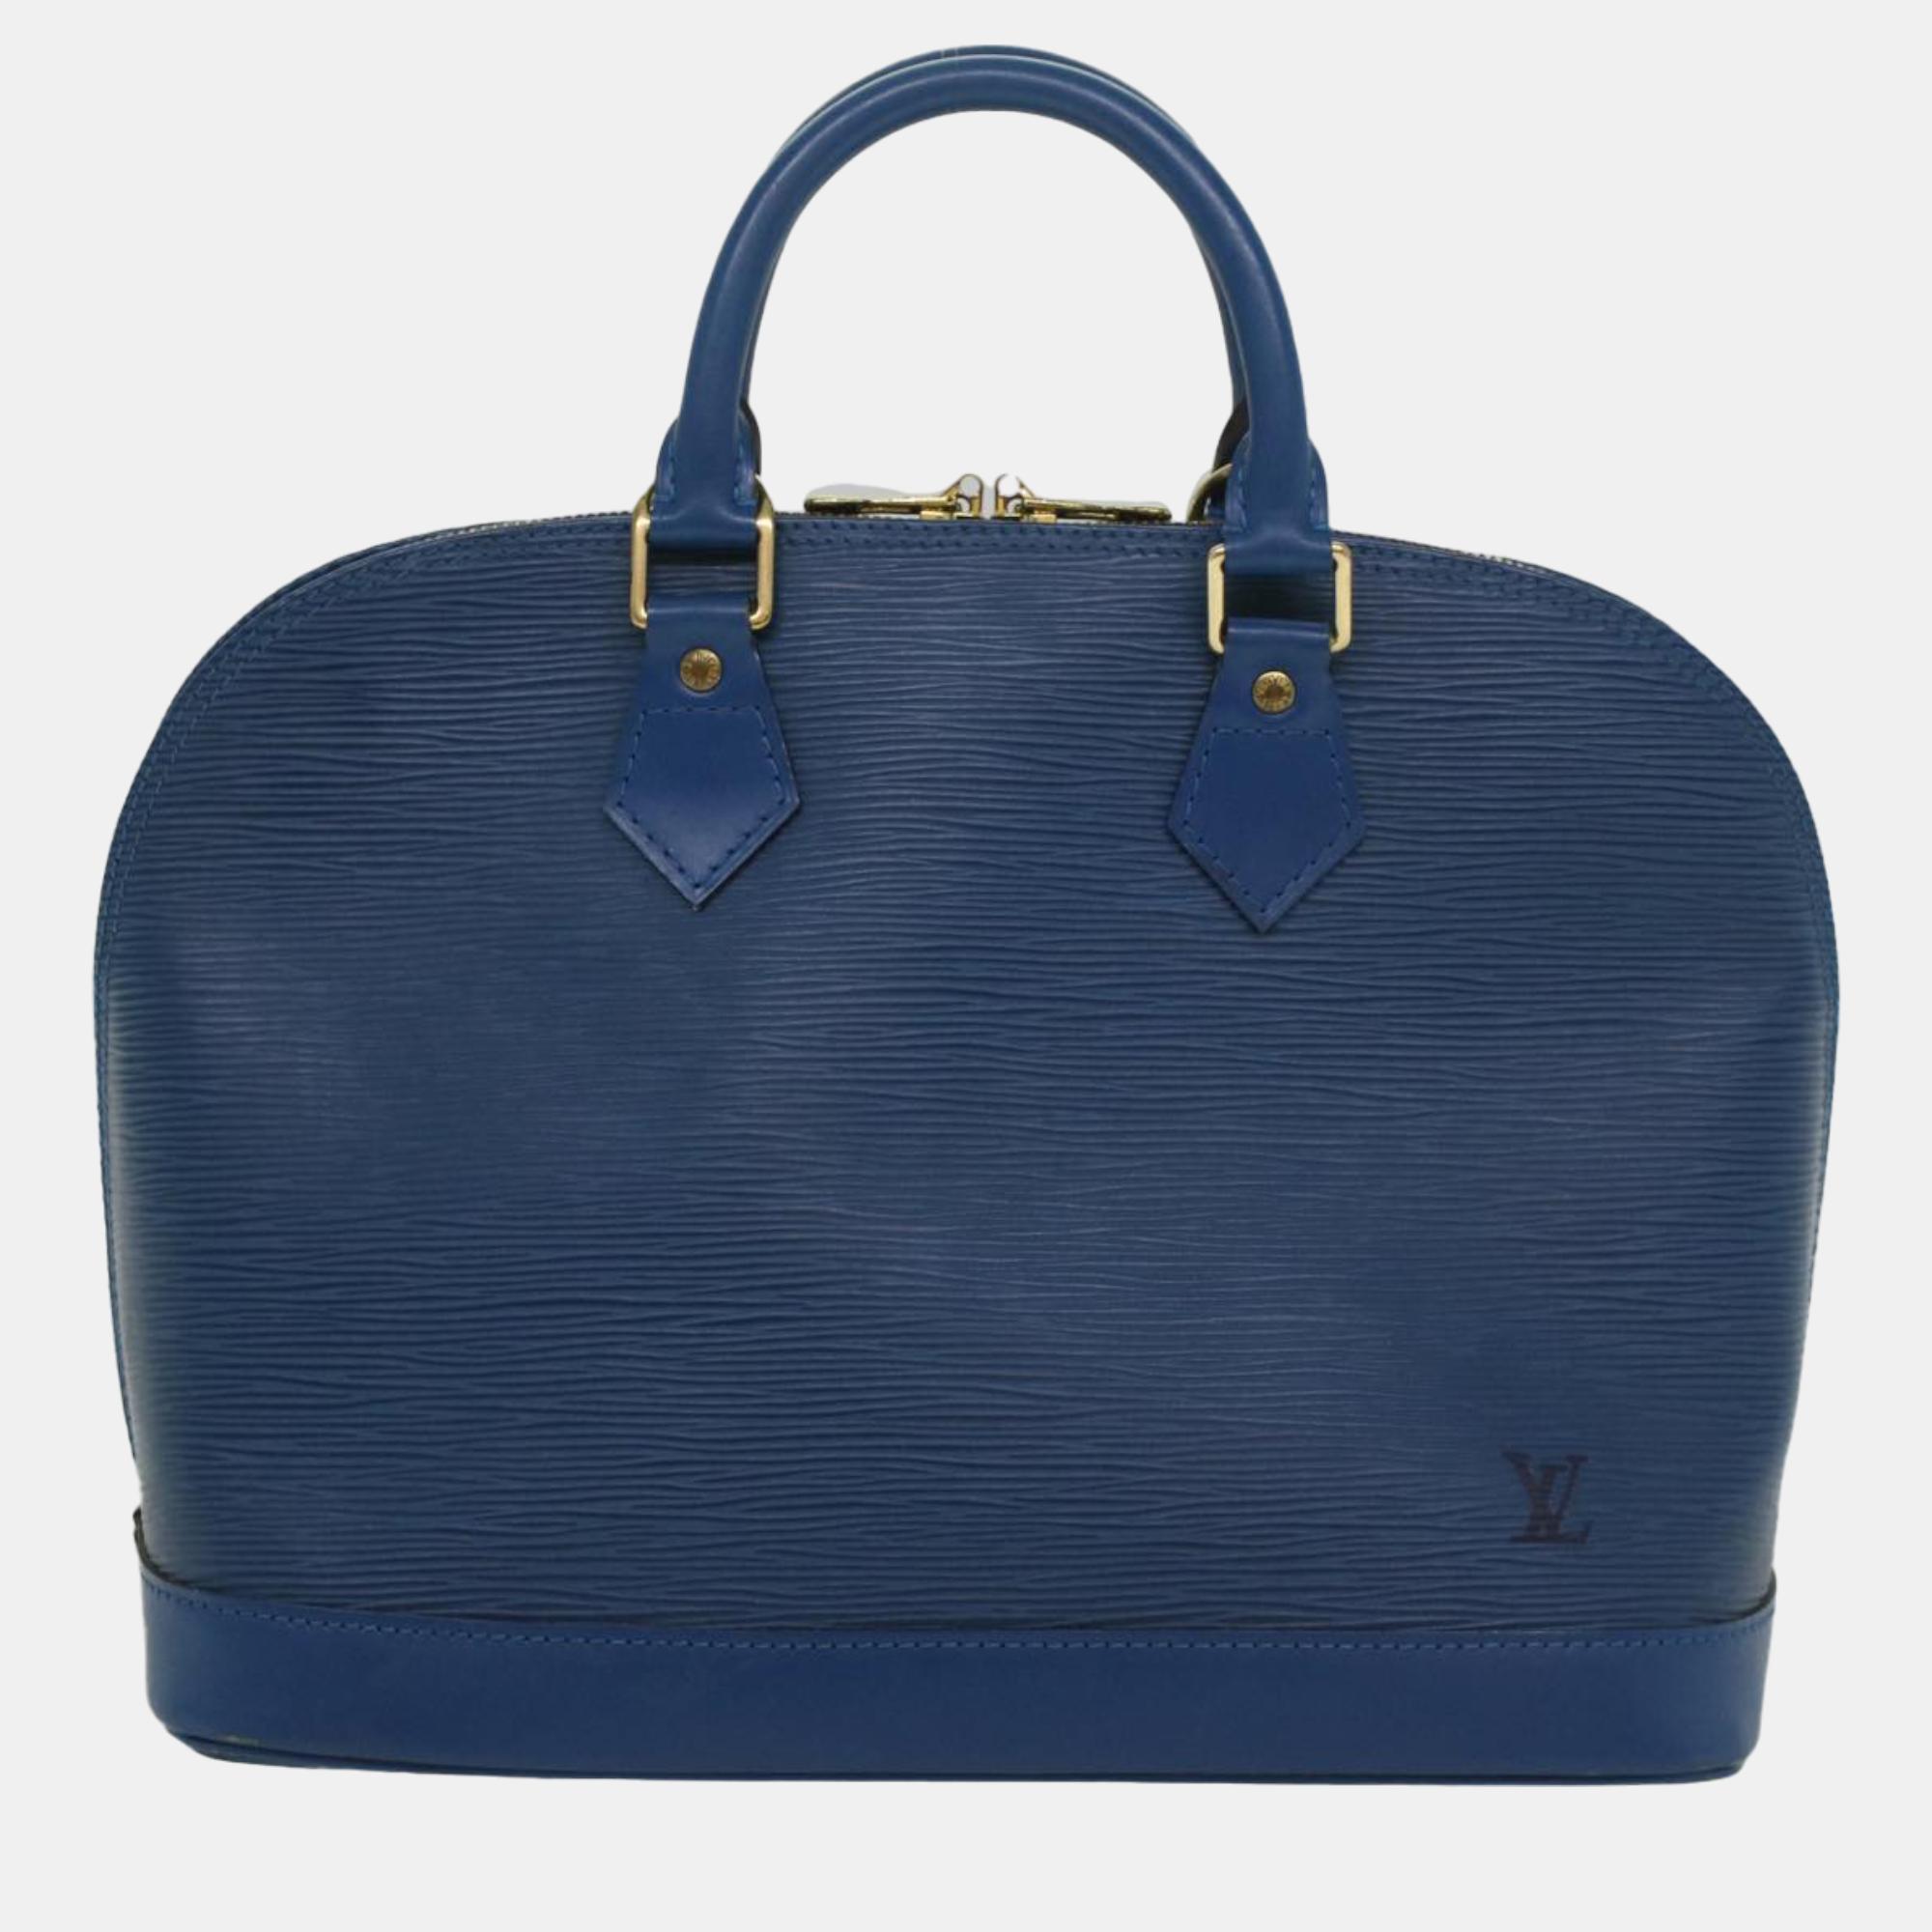 Pre-owned Louis Vuitton Blue Epi Leather Alma Pm Satchel